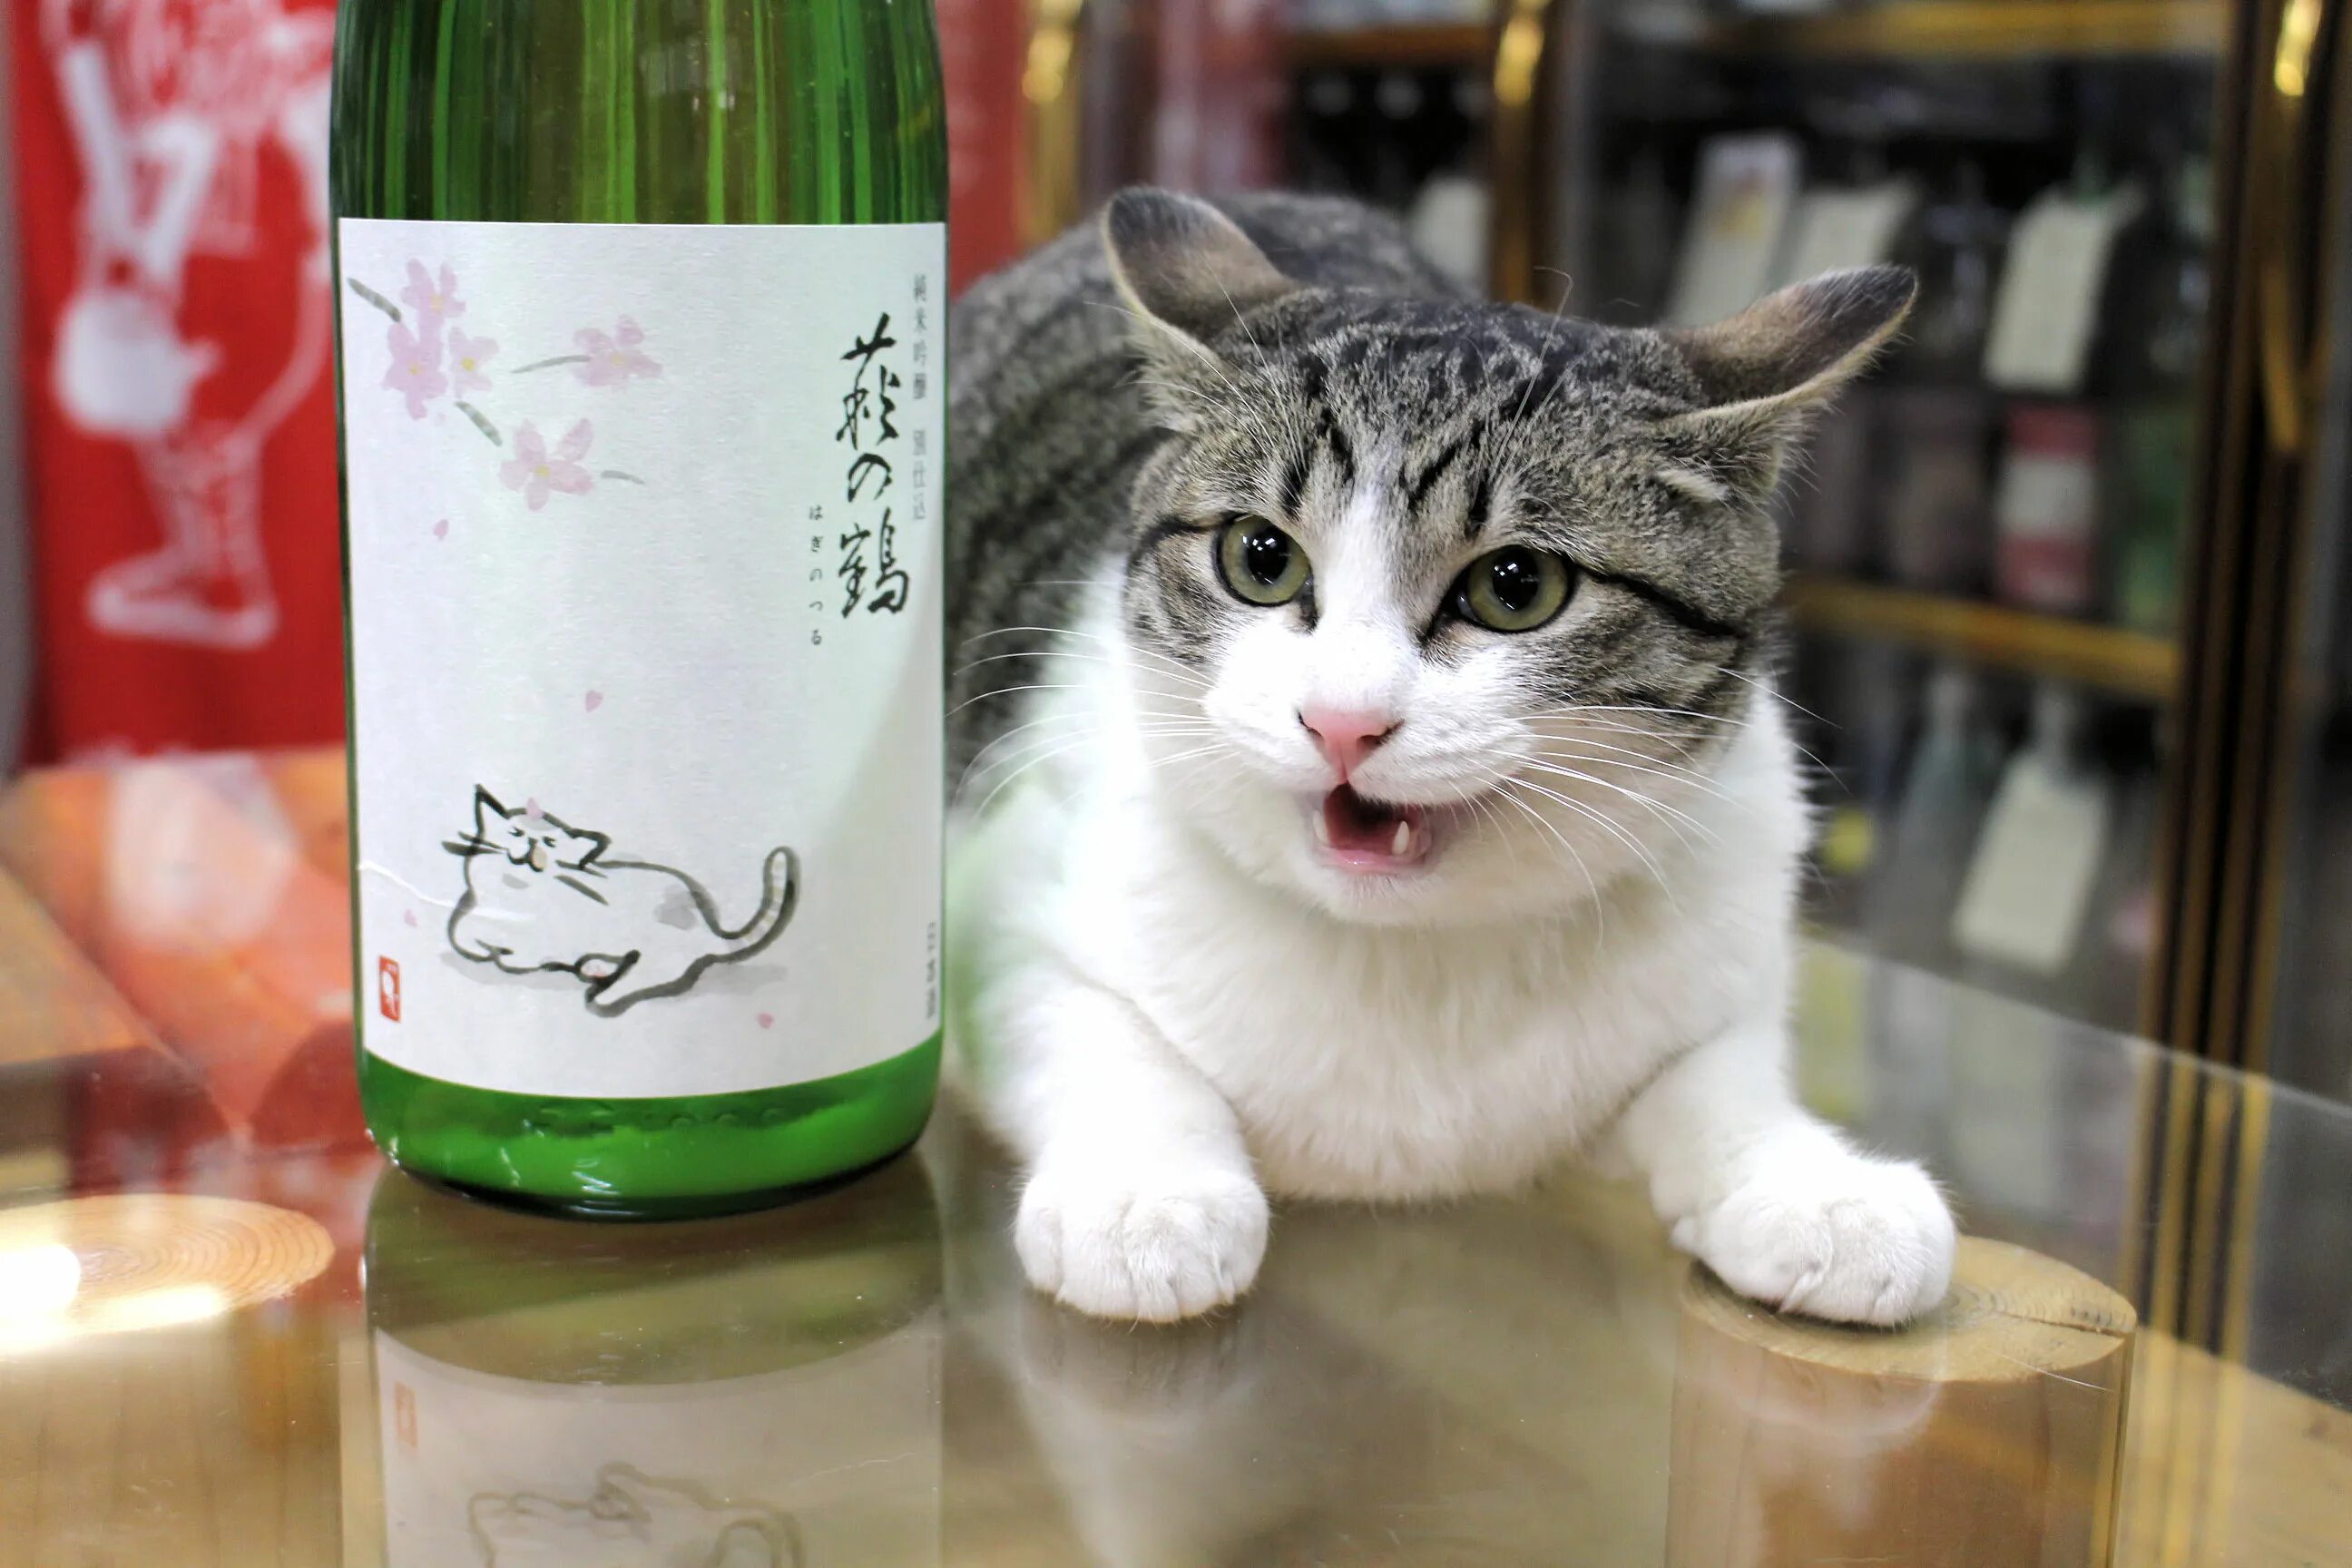 Включи картинки хаги. Кот и сакэ. Кошка Хаги. Кот с бутылкой сакэ. Кот под сакэ.